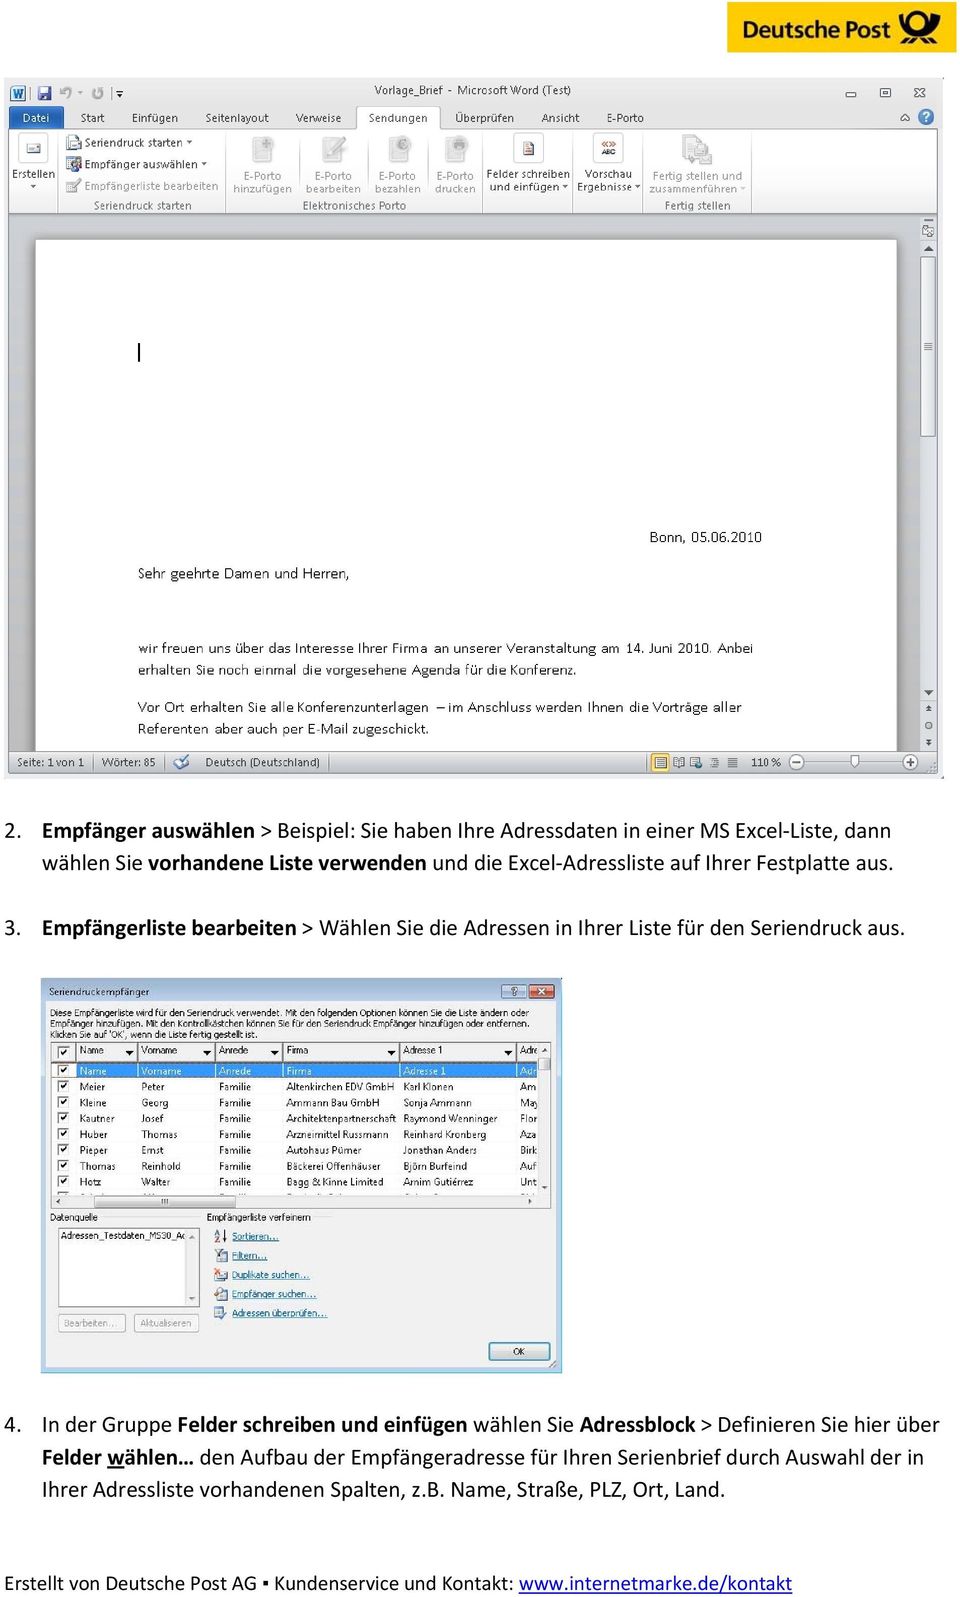 Frankieren In Microsoft Word Mit Dem E Porto Add In Der Deutschen